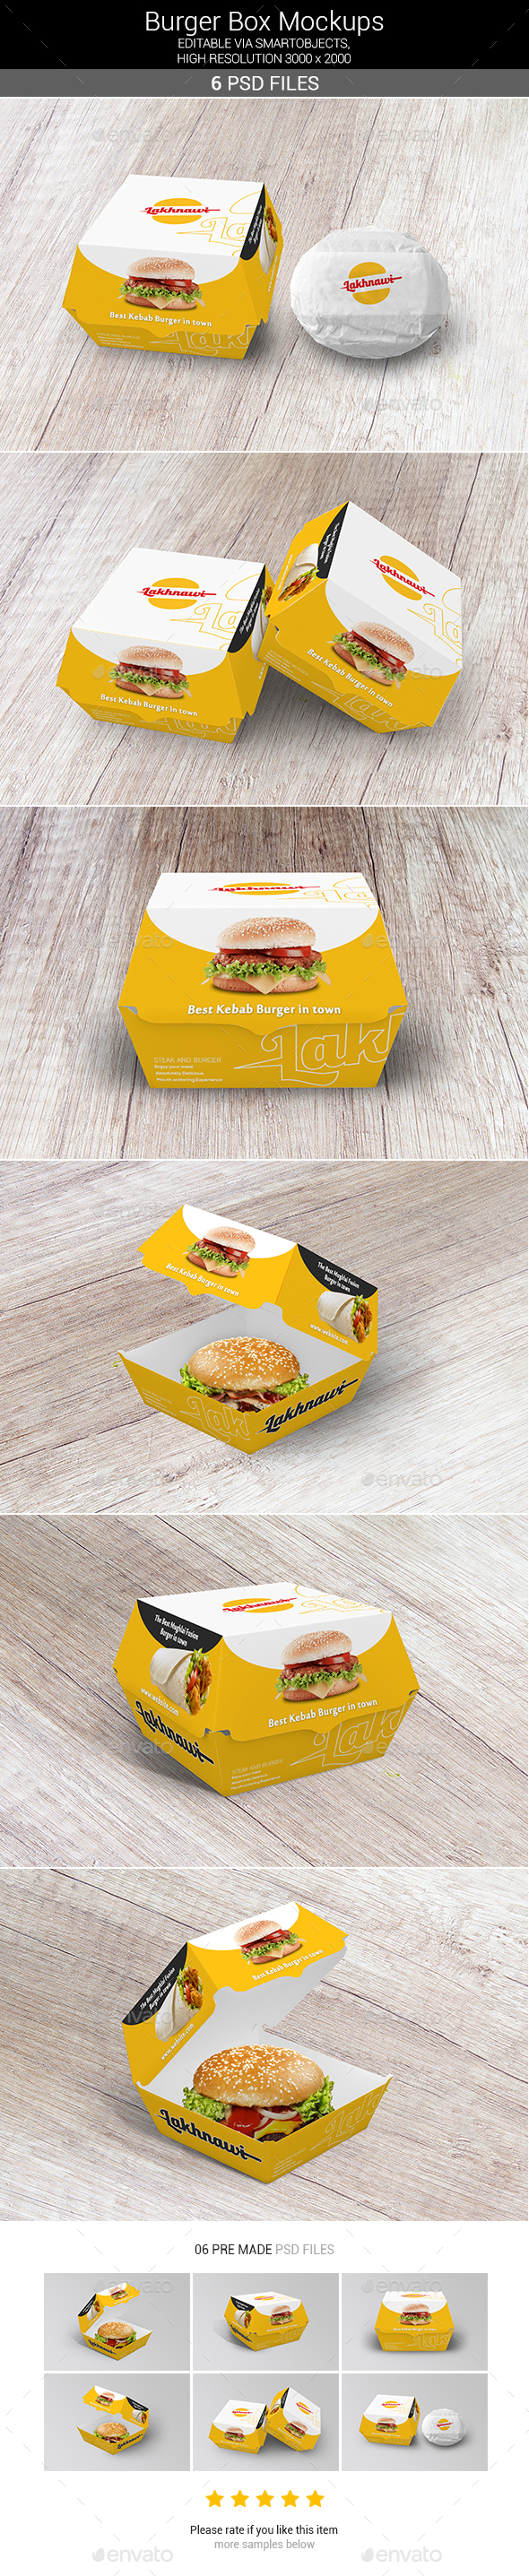 Burger Box Mockups